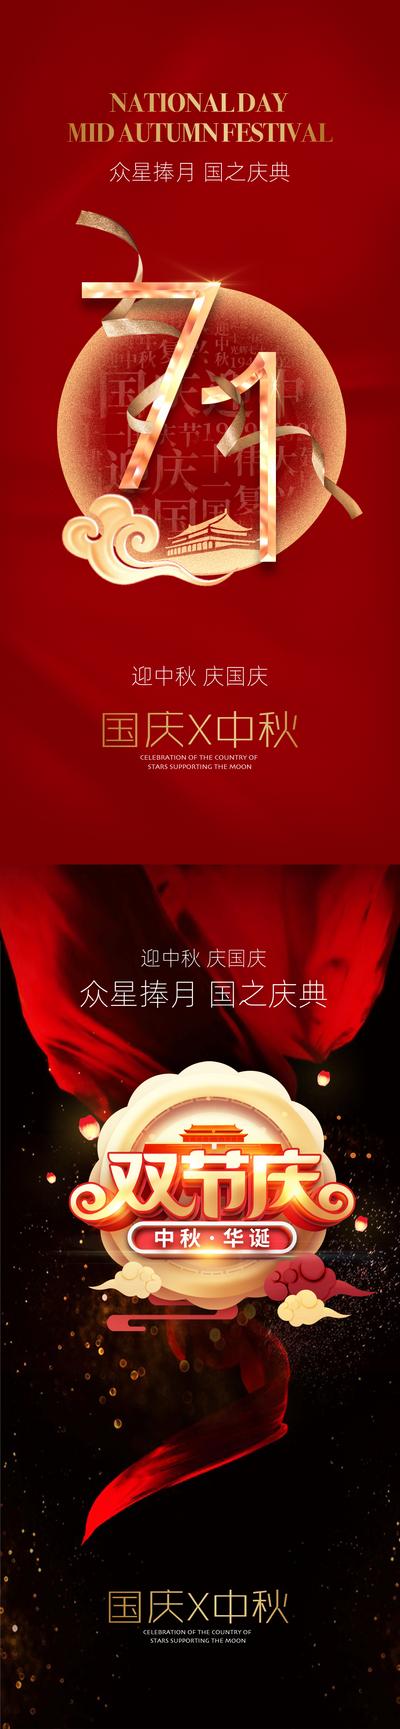 南门网 海报 中国传统节日 公历节日 红金 国庆节 中秋节 